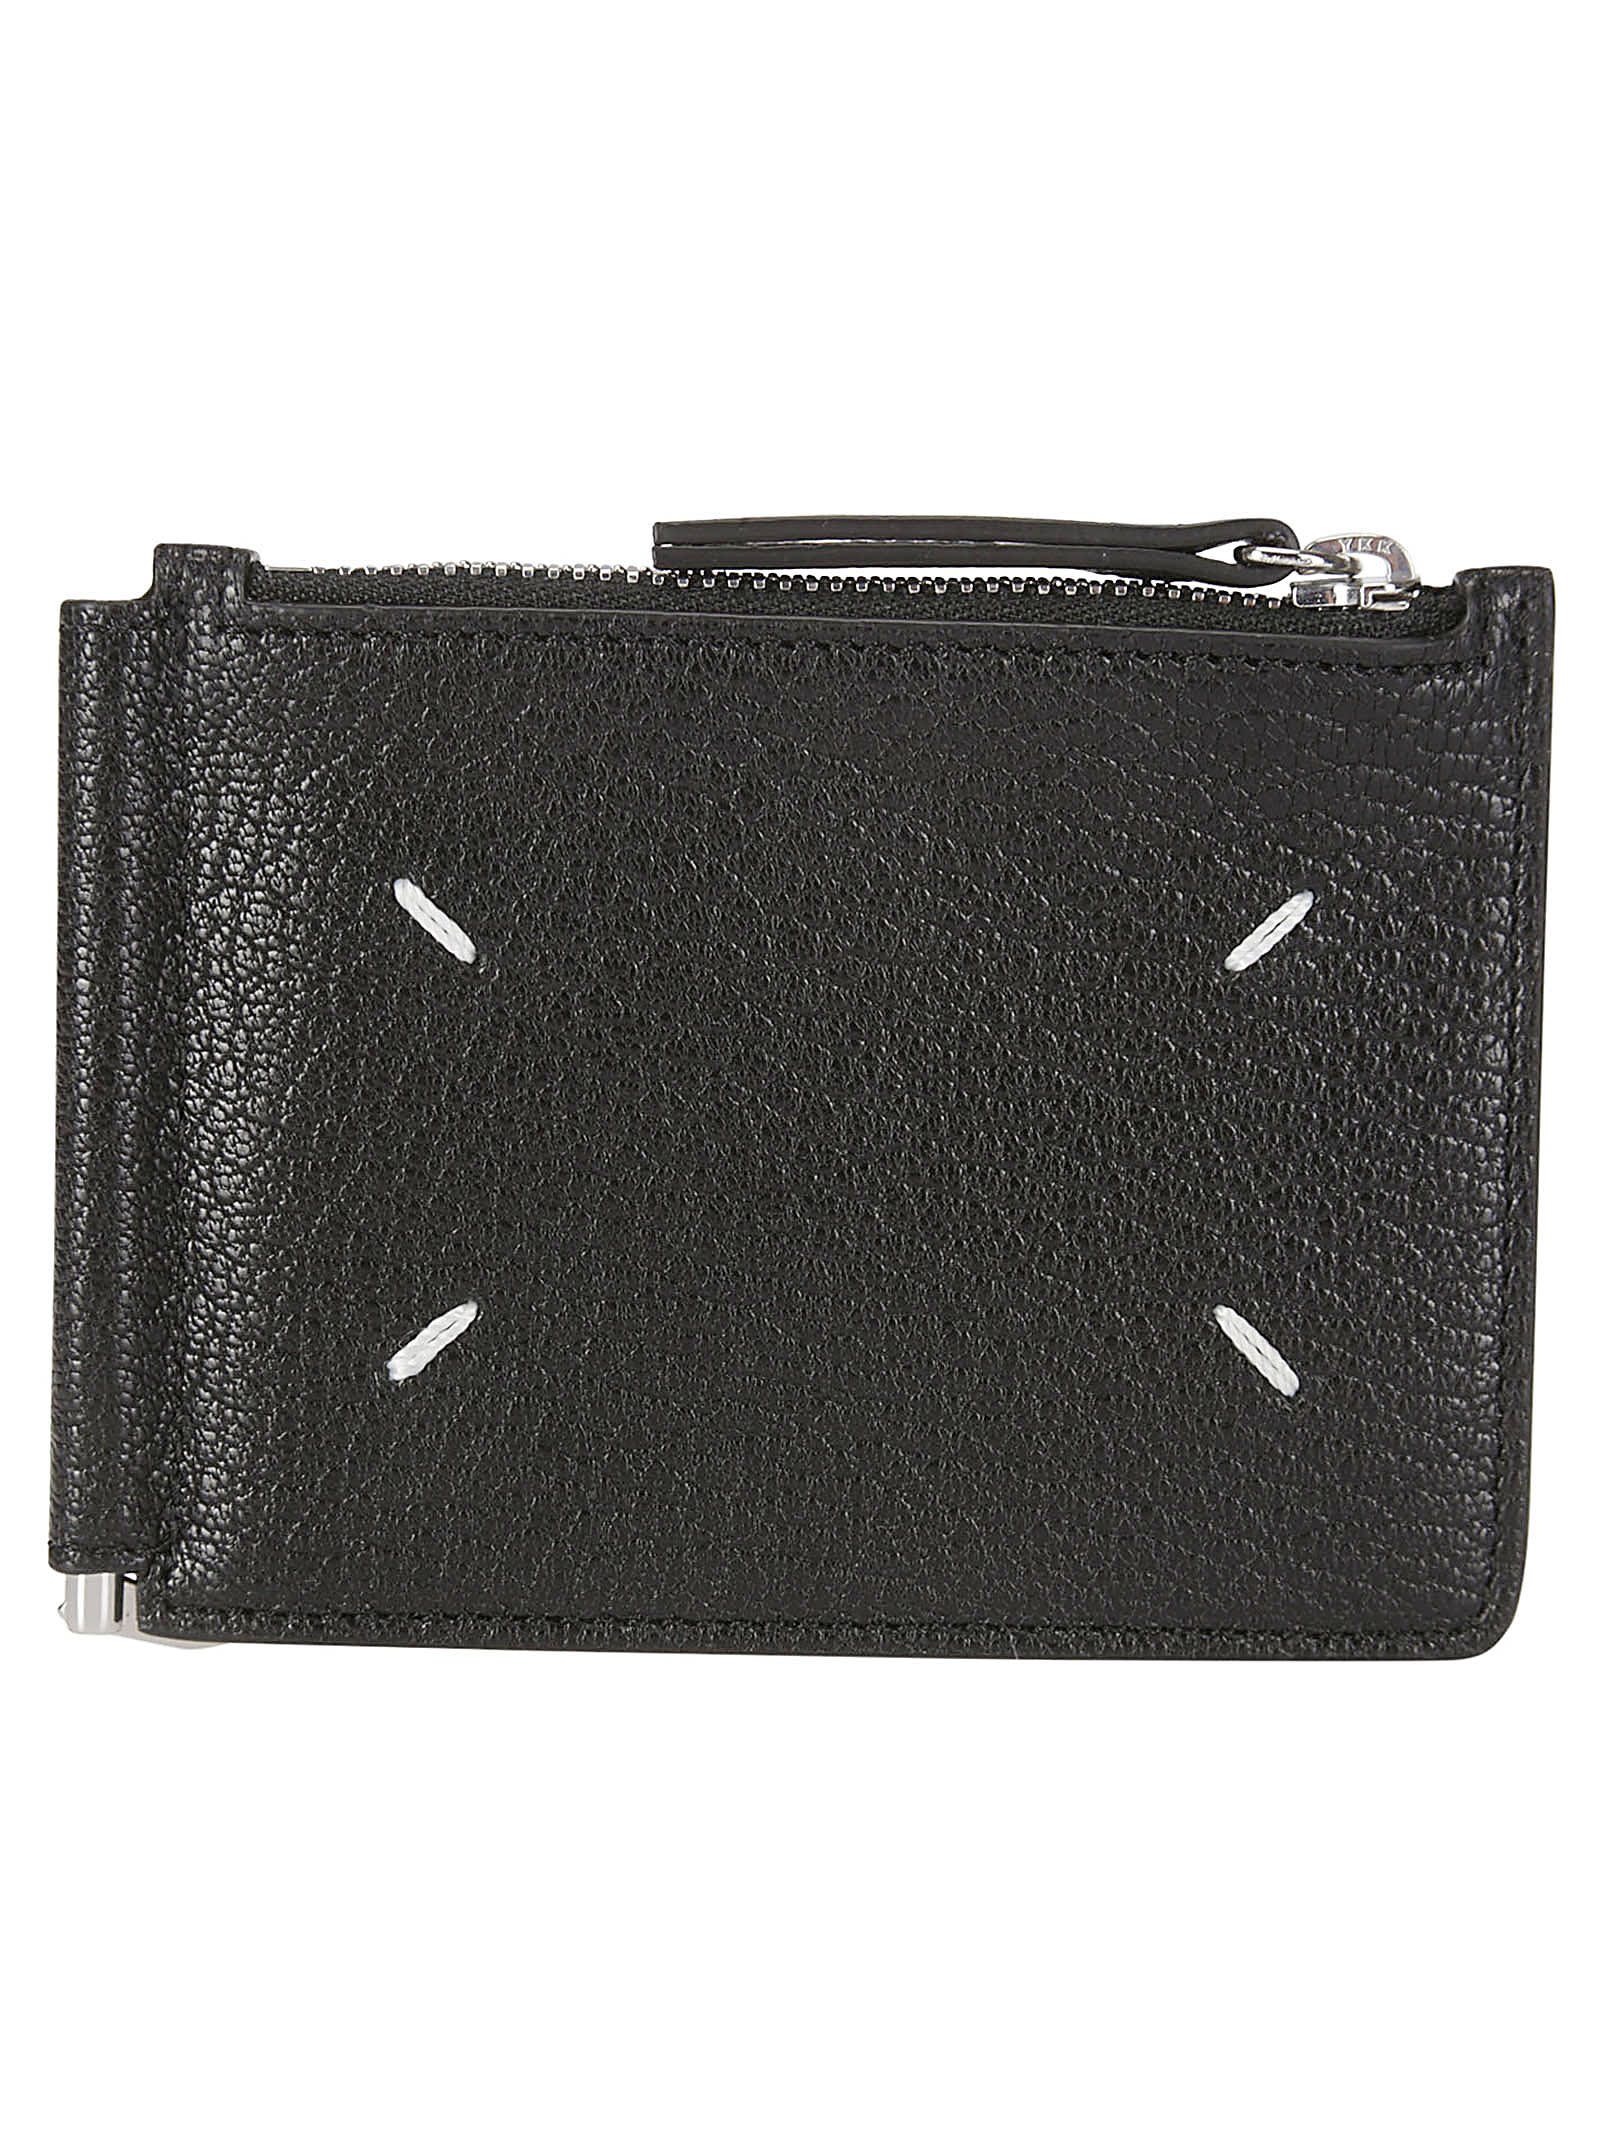 Shop Maison Margiela Wallet Slim 2 Pincer In Black